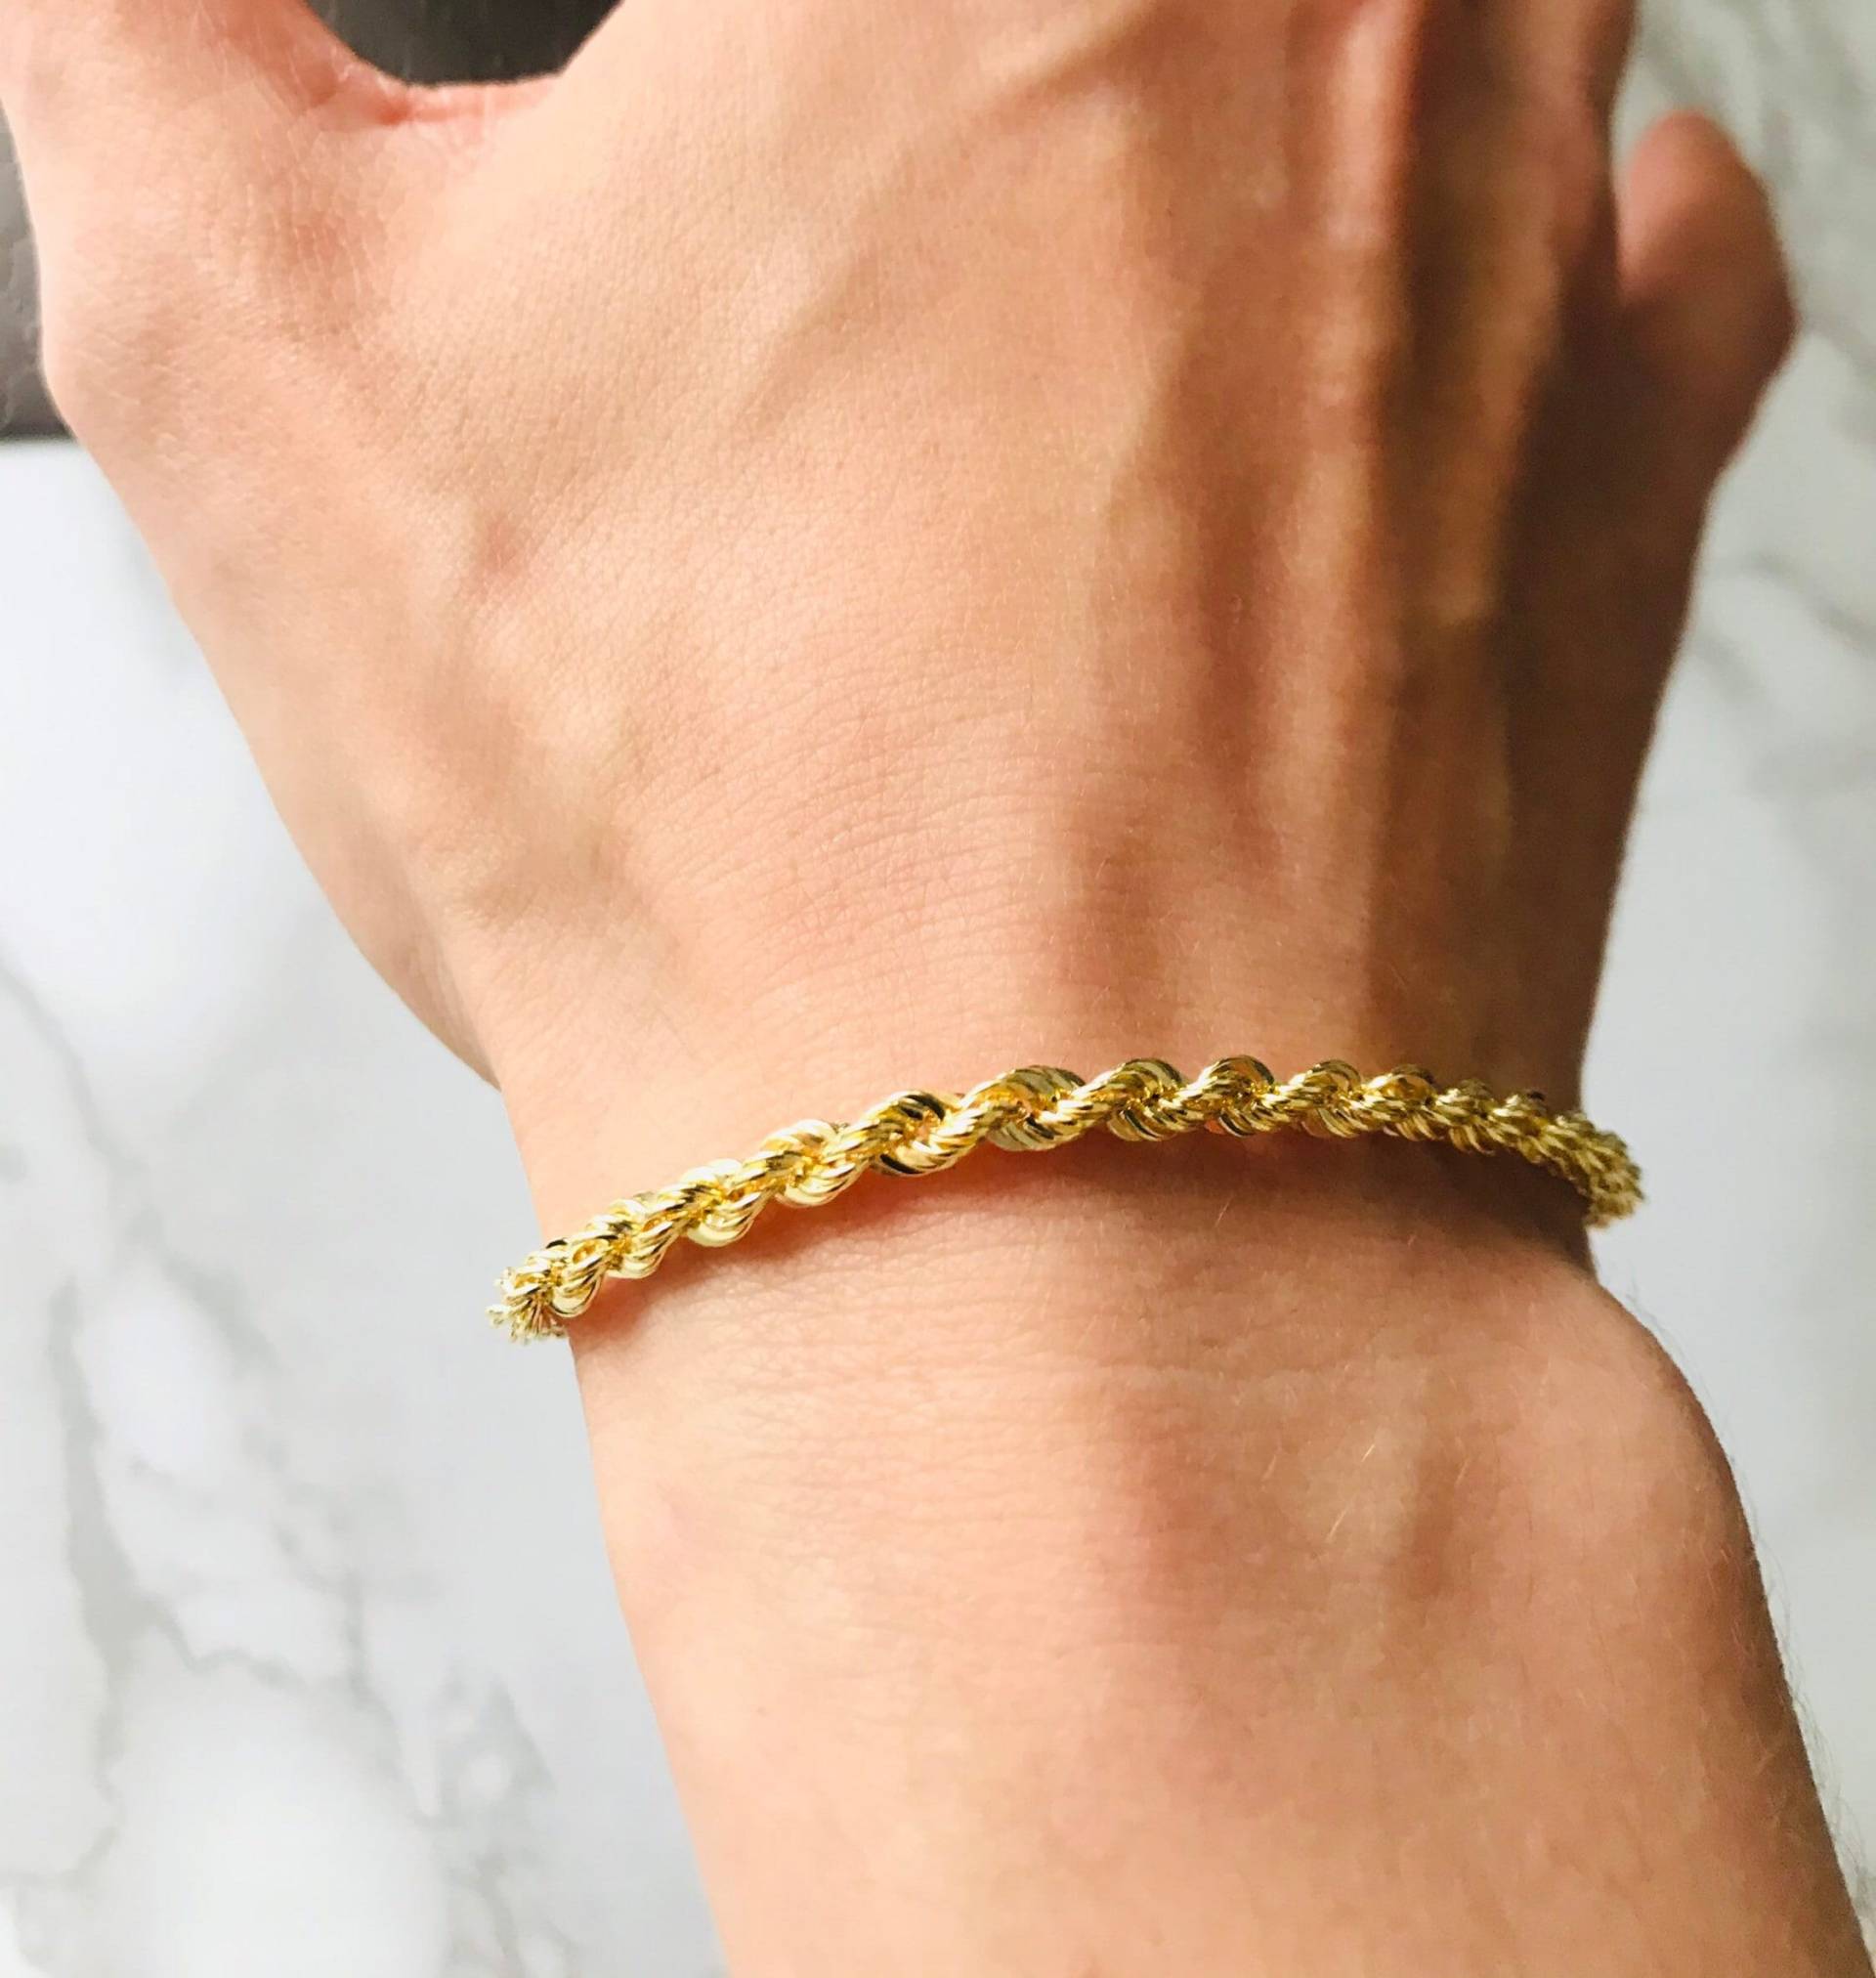 Echtes 9 Karat Gold Seil Ketten Armband Für Männer von Luxury213